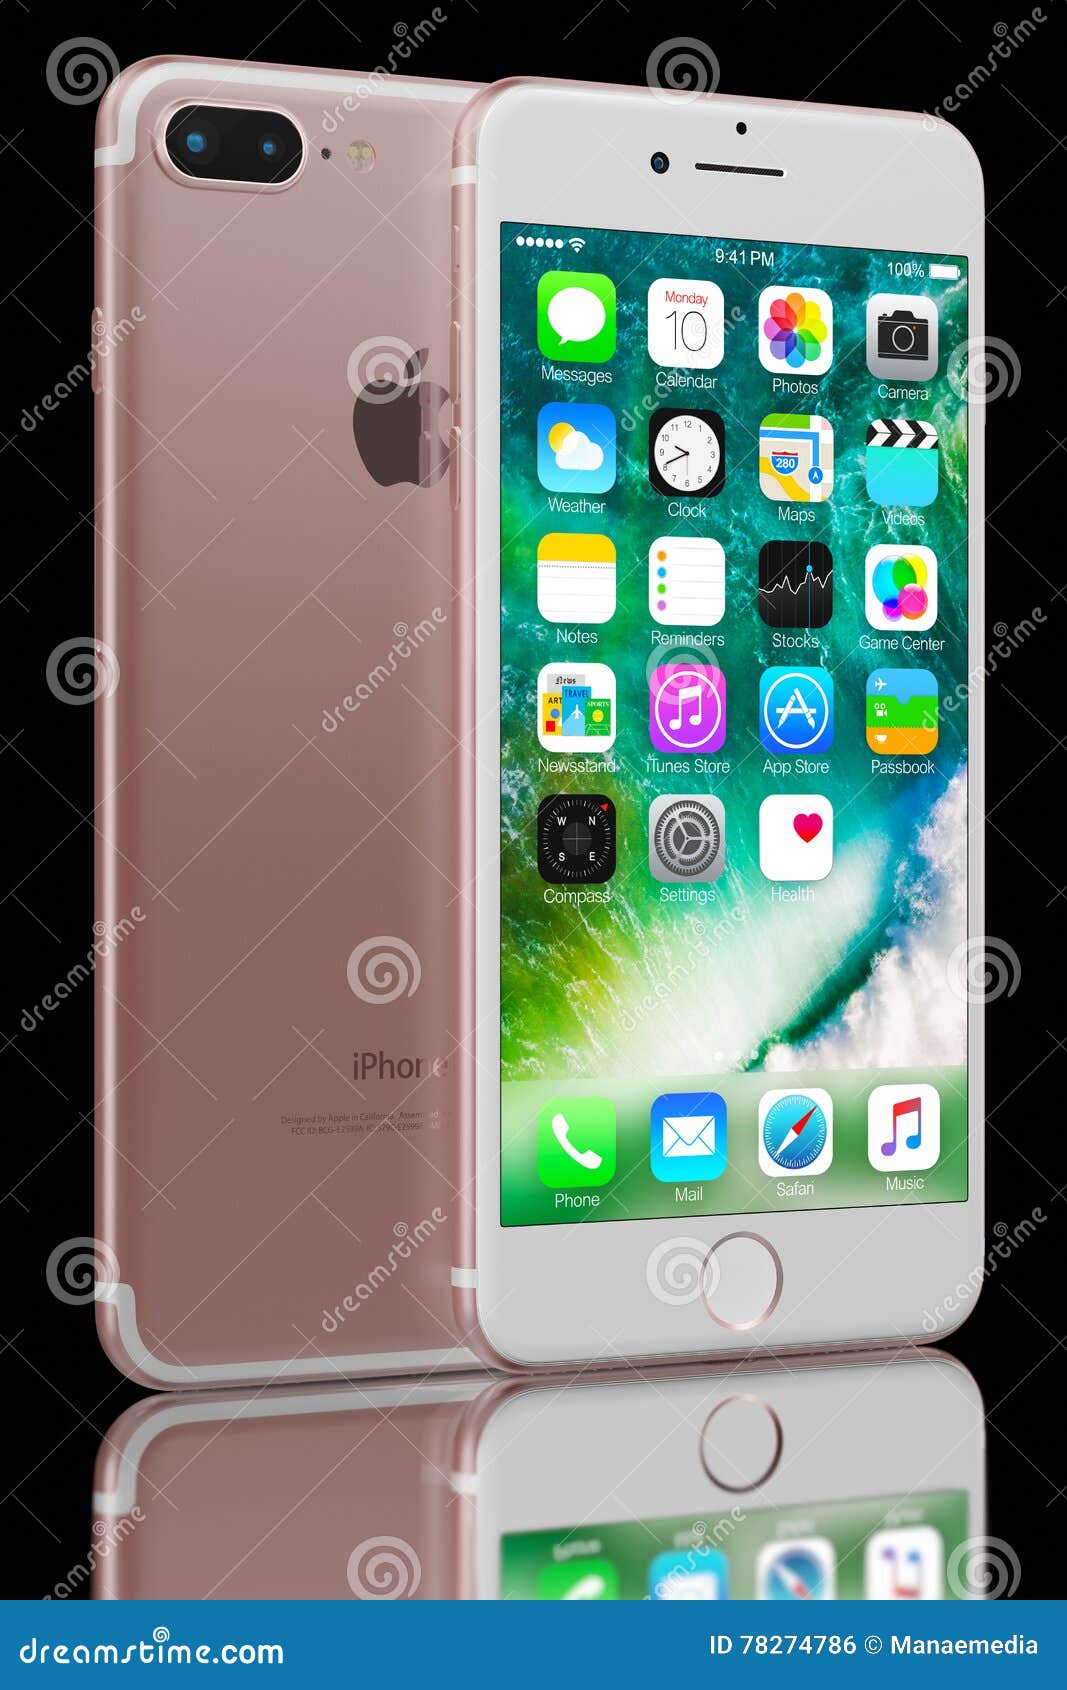 Rose Gold iPhone: Sở hữu một chiếc iPhone màu hồng kim cương sẽ khiến bạn cảm thấy thật tự tin và gợi cảm. Màu sắc sang trọng cùng với các tính năng thông minh định vị trong chiếc điện thoại sẽ giúp bạn nổi bật hơn trong mắt mọi người.